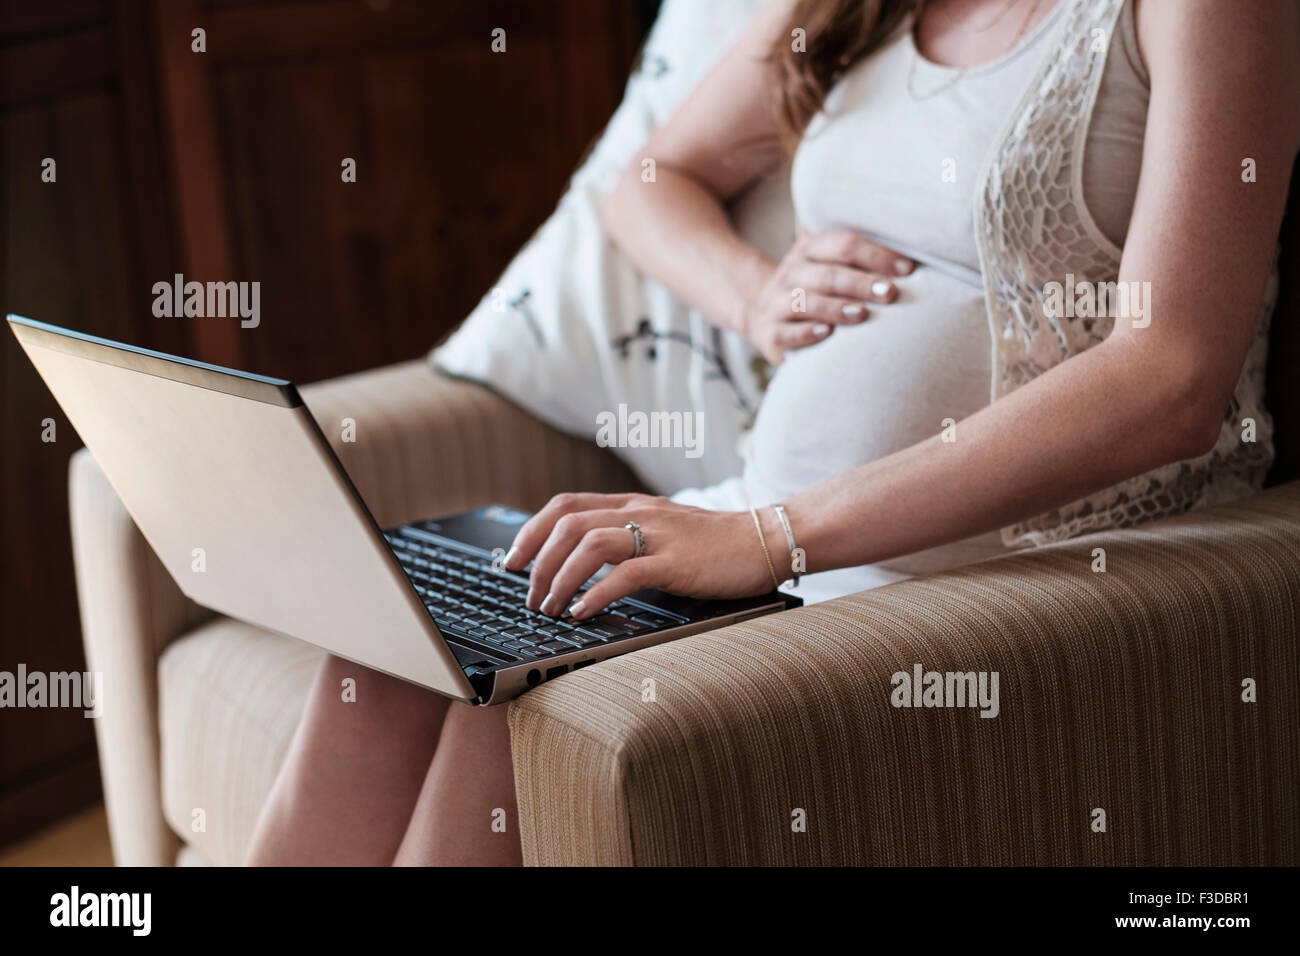 Mittelteil der schwangeren Frau mit laptop Stockfoto